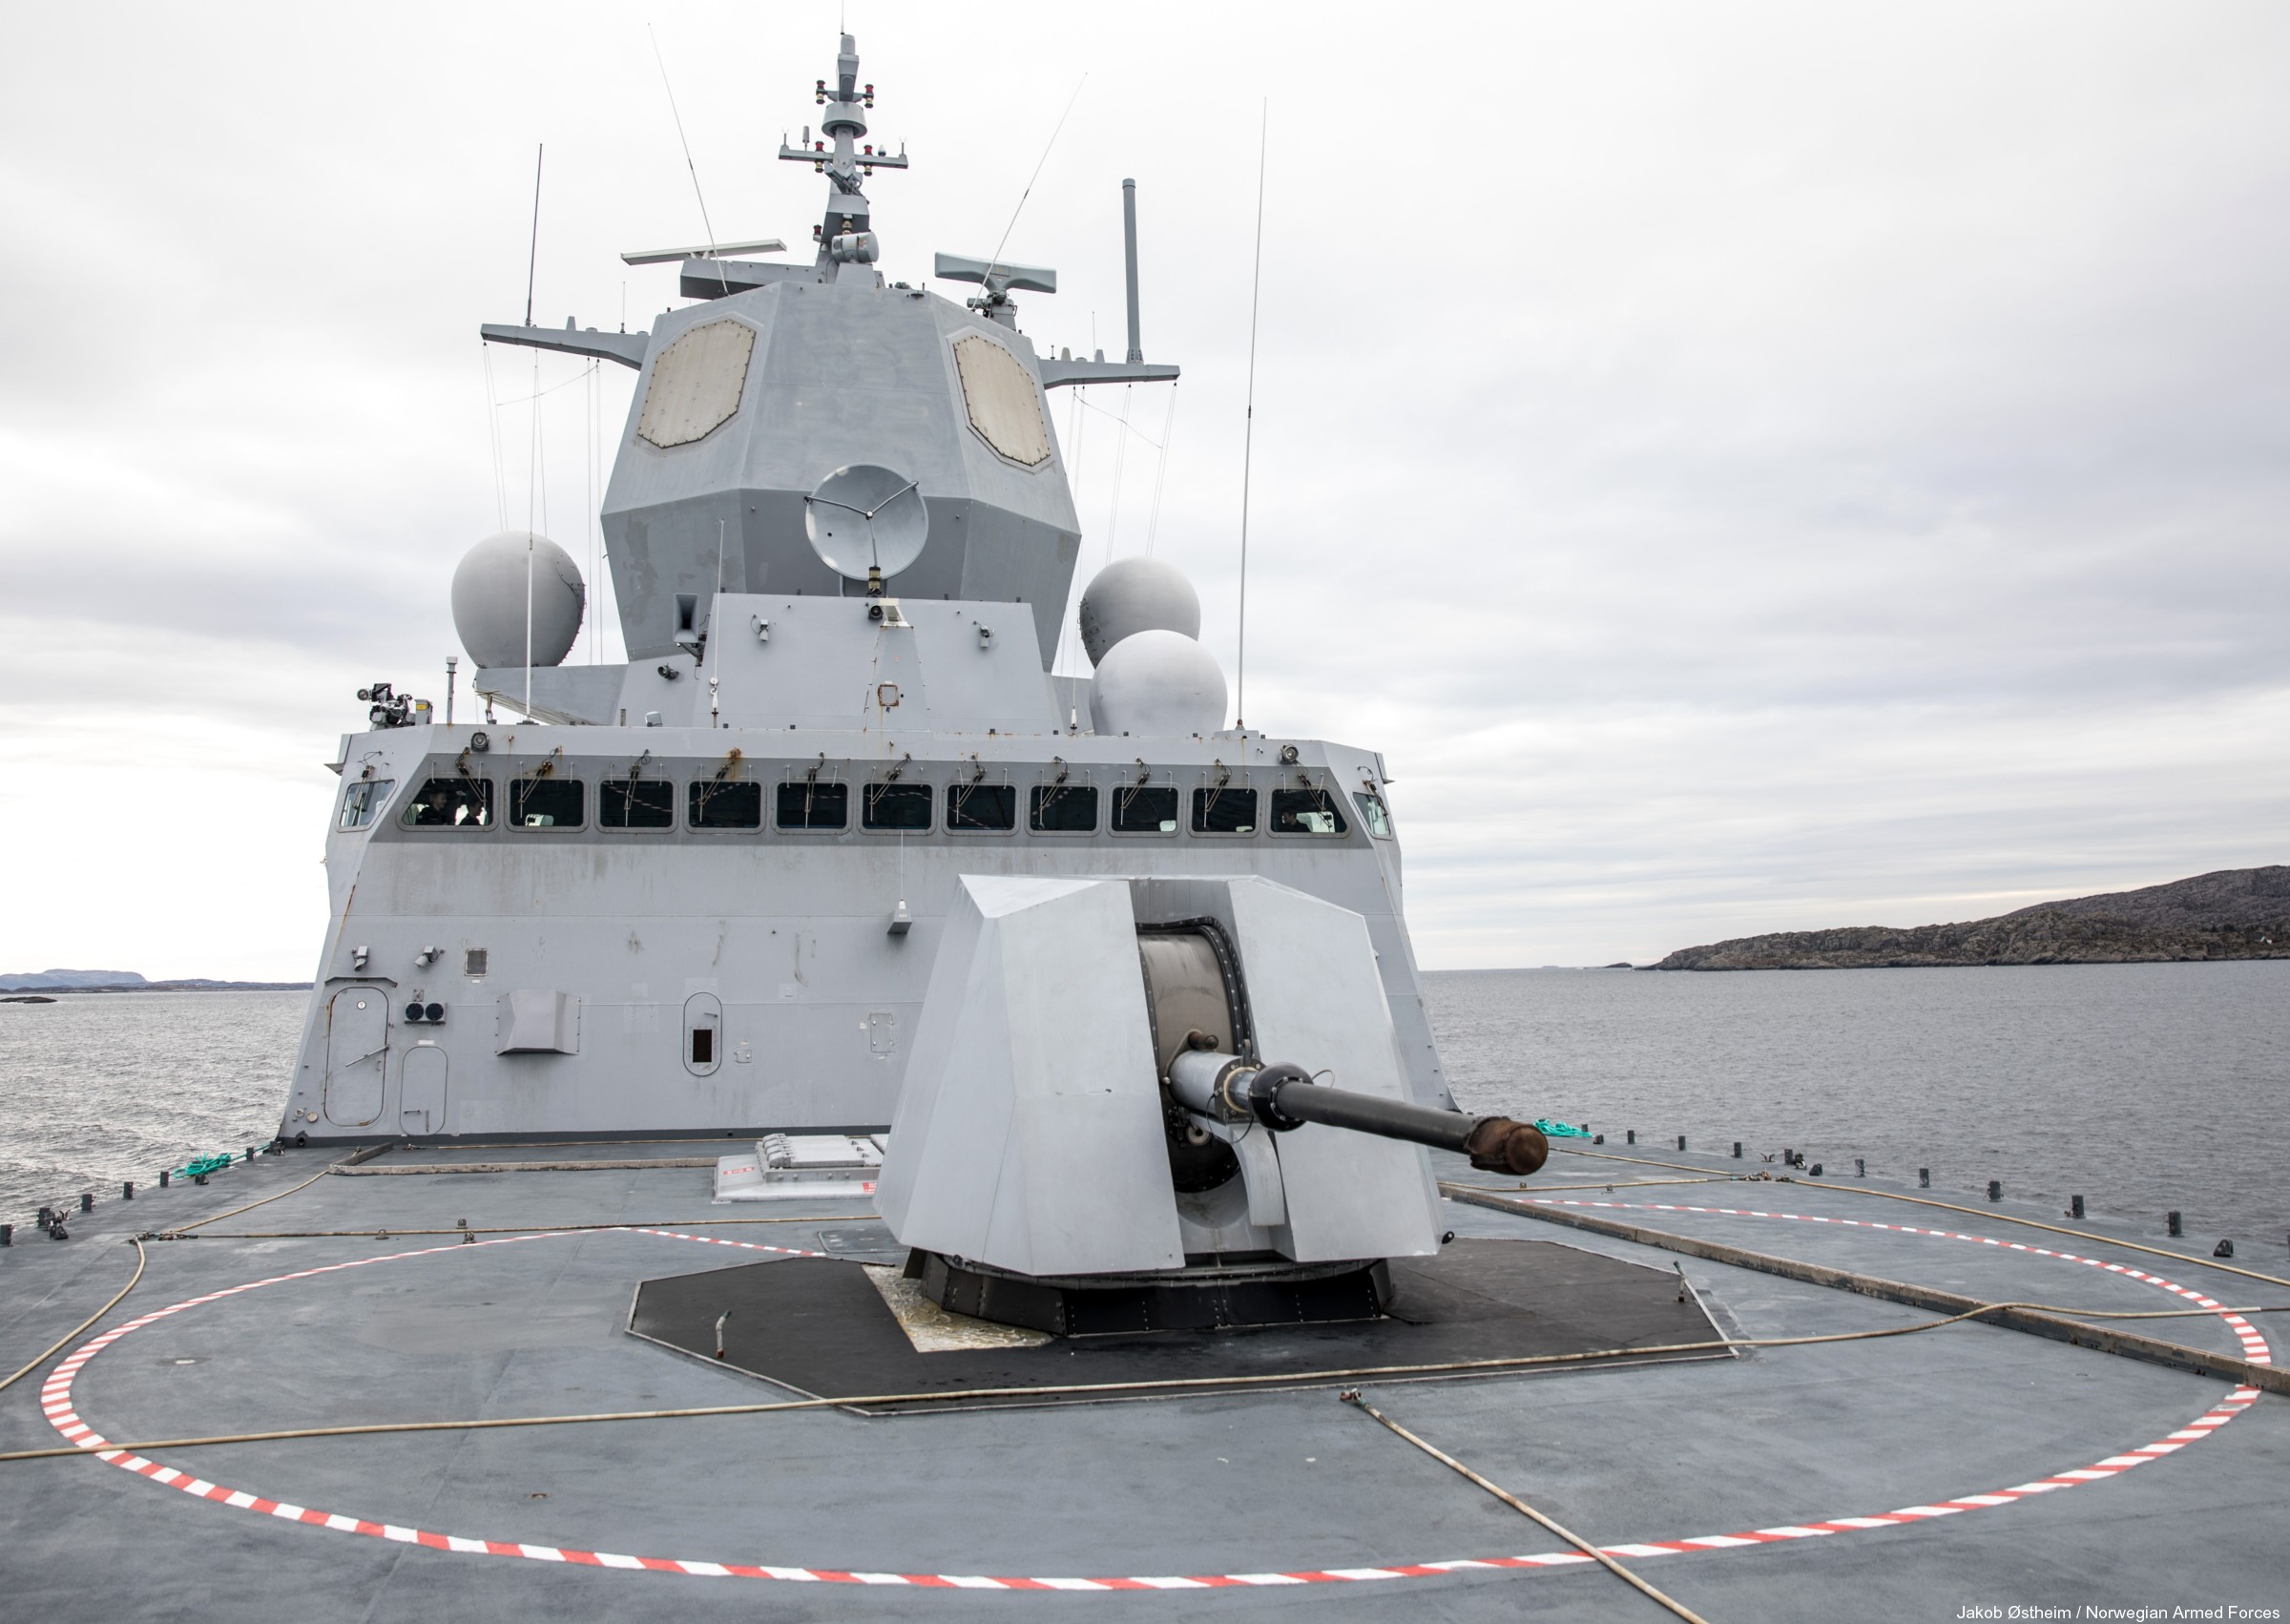 f-310 fridtjof nansen hnoms knm frigate royal norwegian navy sjoforsvaret 35 aegis combat system